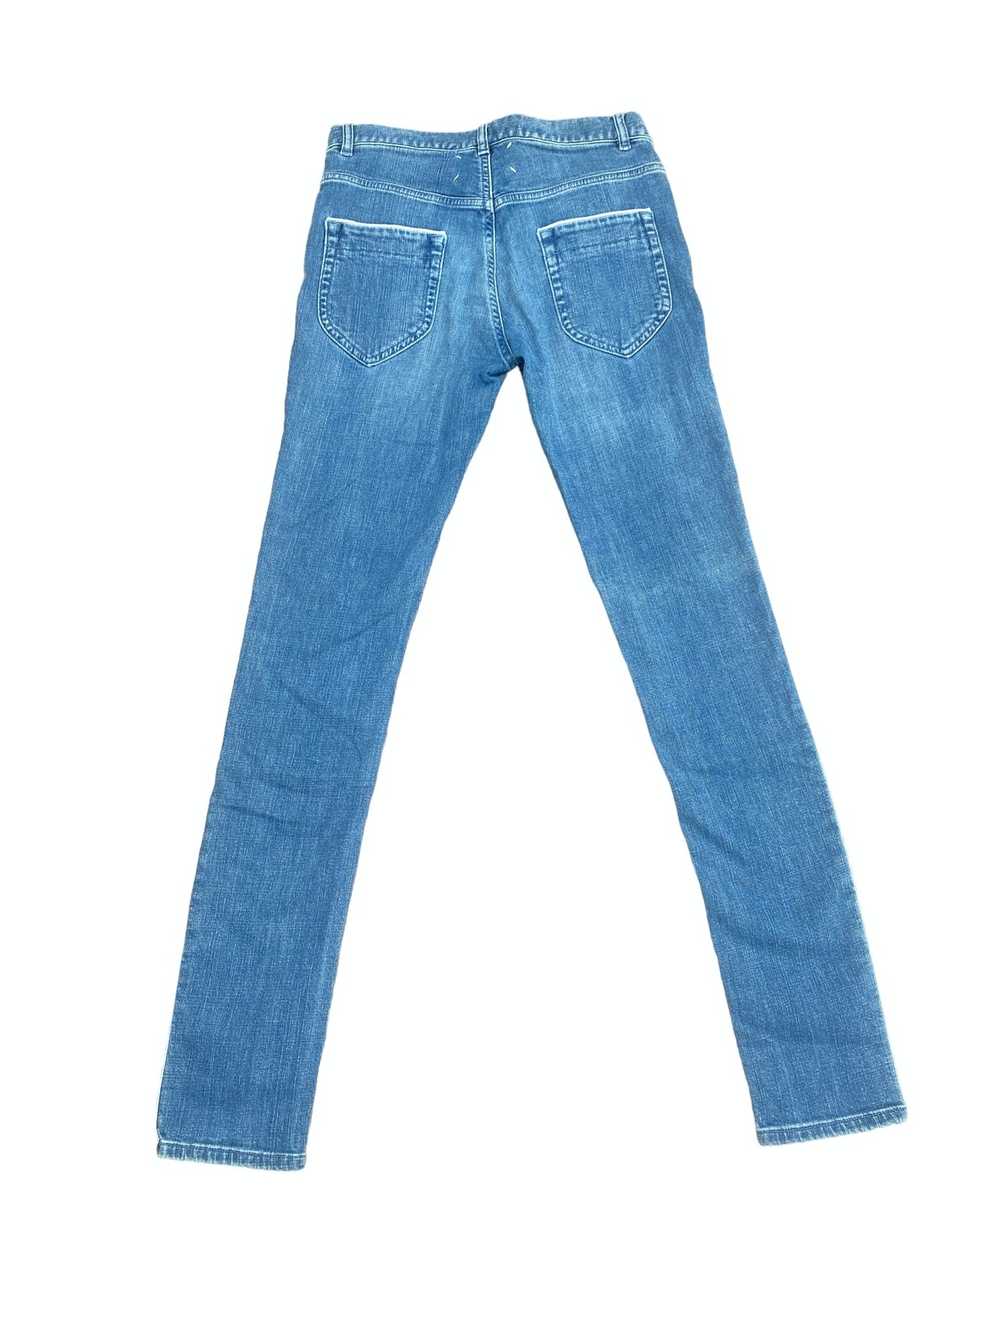 Maison Margiela SS 2008 Light blue denim jeans - image 5